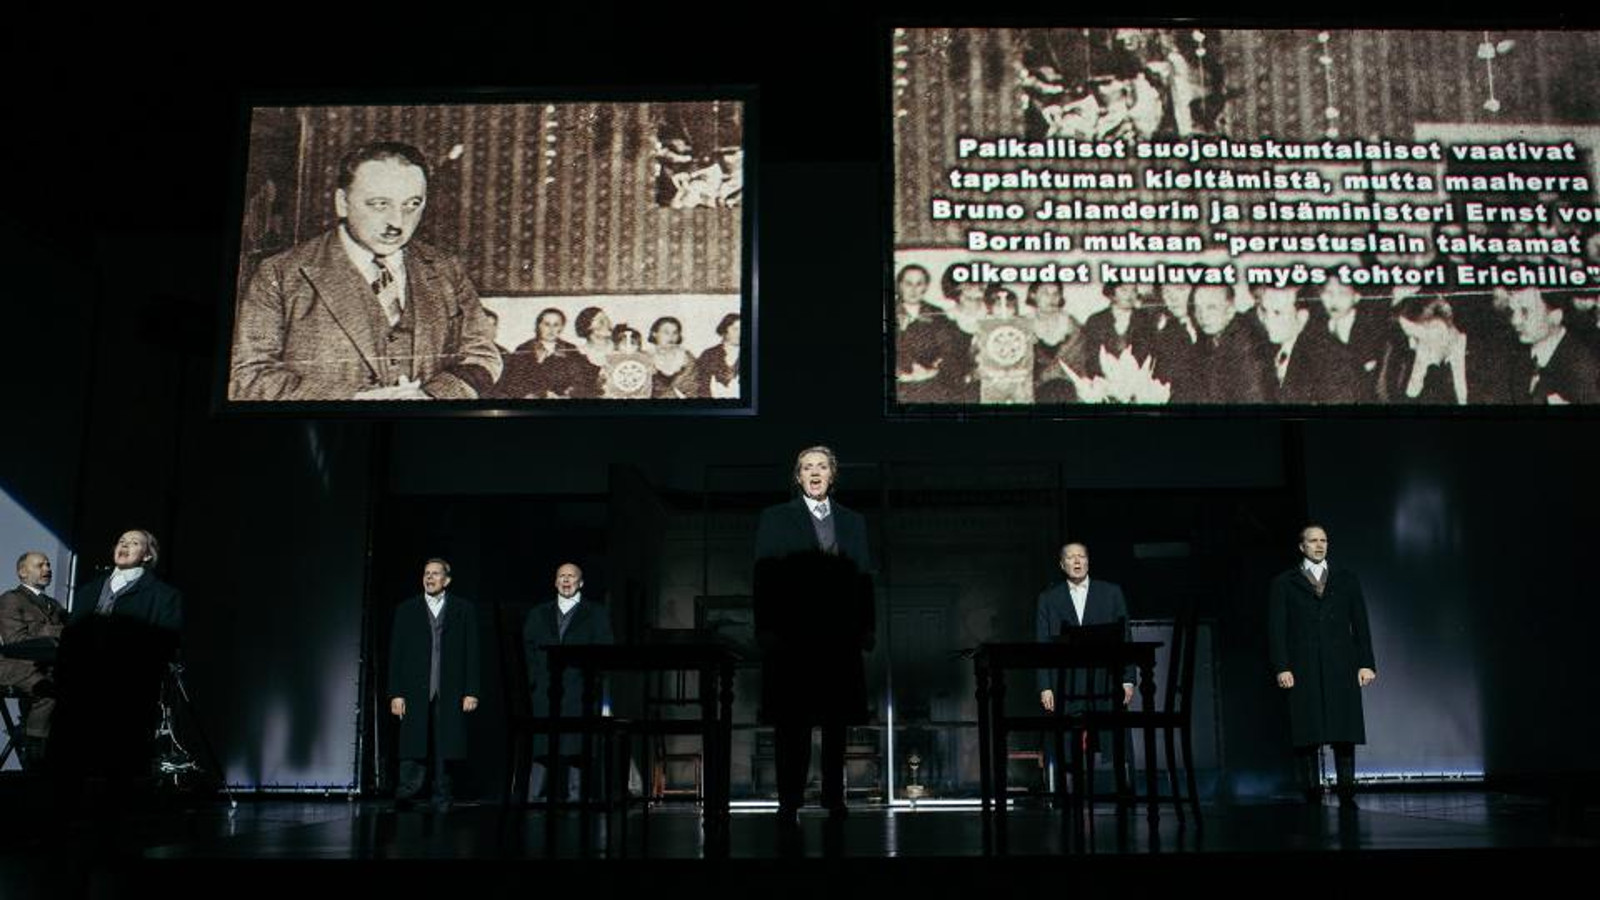 Kuvassa ovat alaosassa näyttelijät seisomassa ja laulamassa.  Yläosassa näyttötaulut, joissa oikealla on mies puhumassa ja oikealla tekstiä tapahtumasta. Kuvat ovat mustavalkoisia.